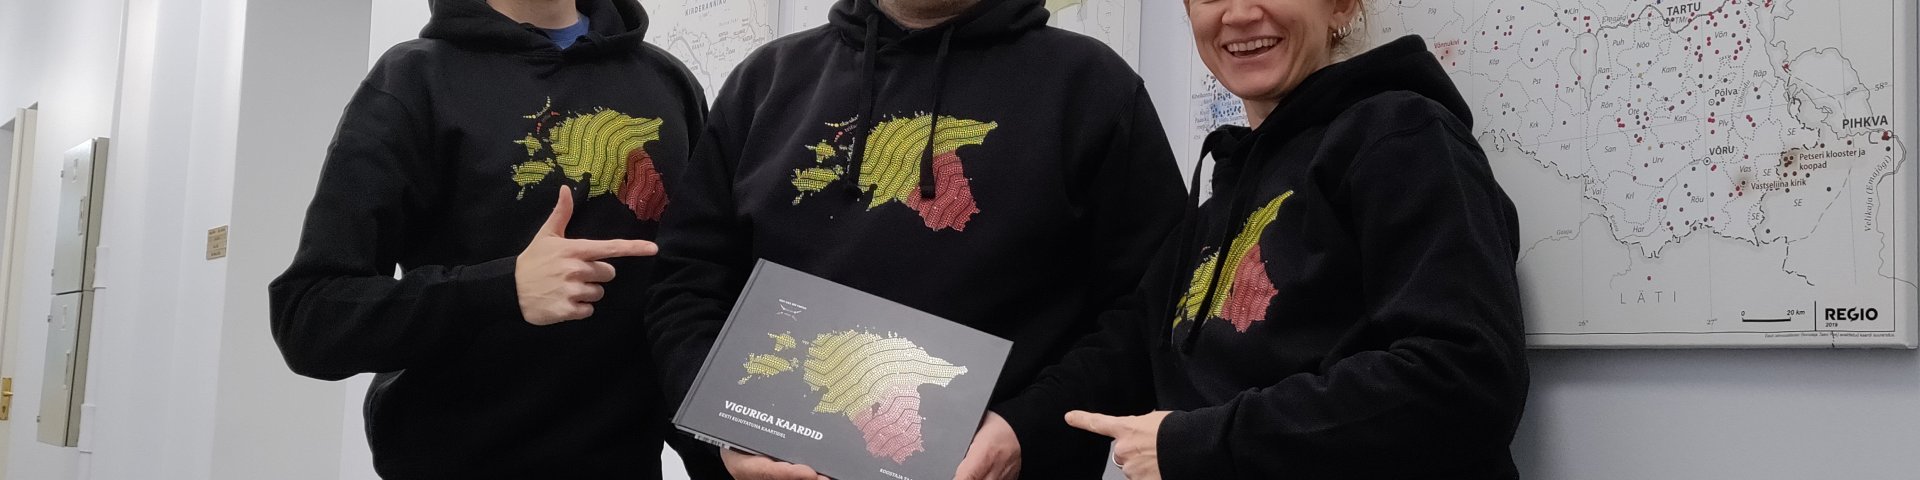 Andmeloo tiitli võitnud raamat "Viguriga kaardid - Eesti kujutatuna kaartidel".